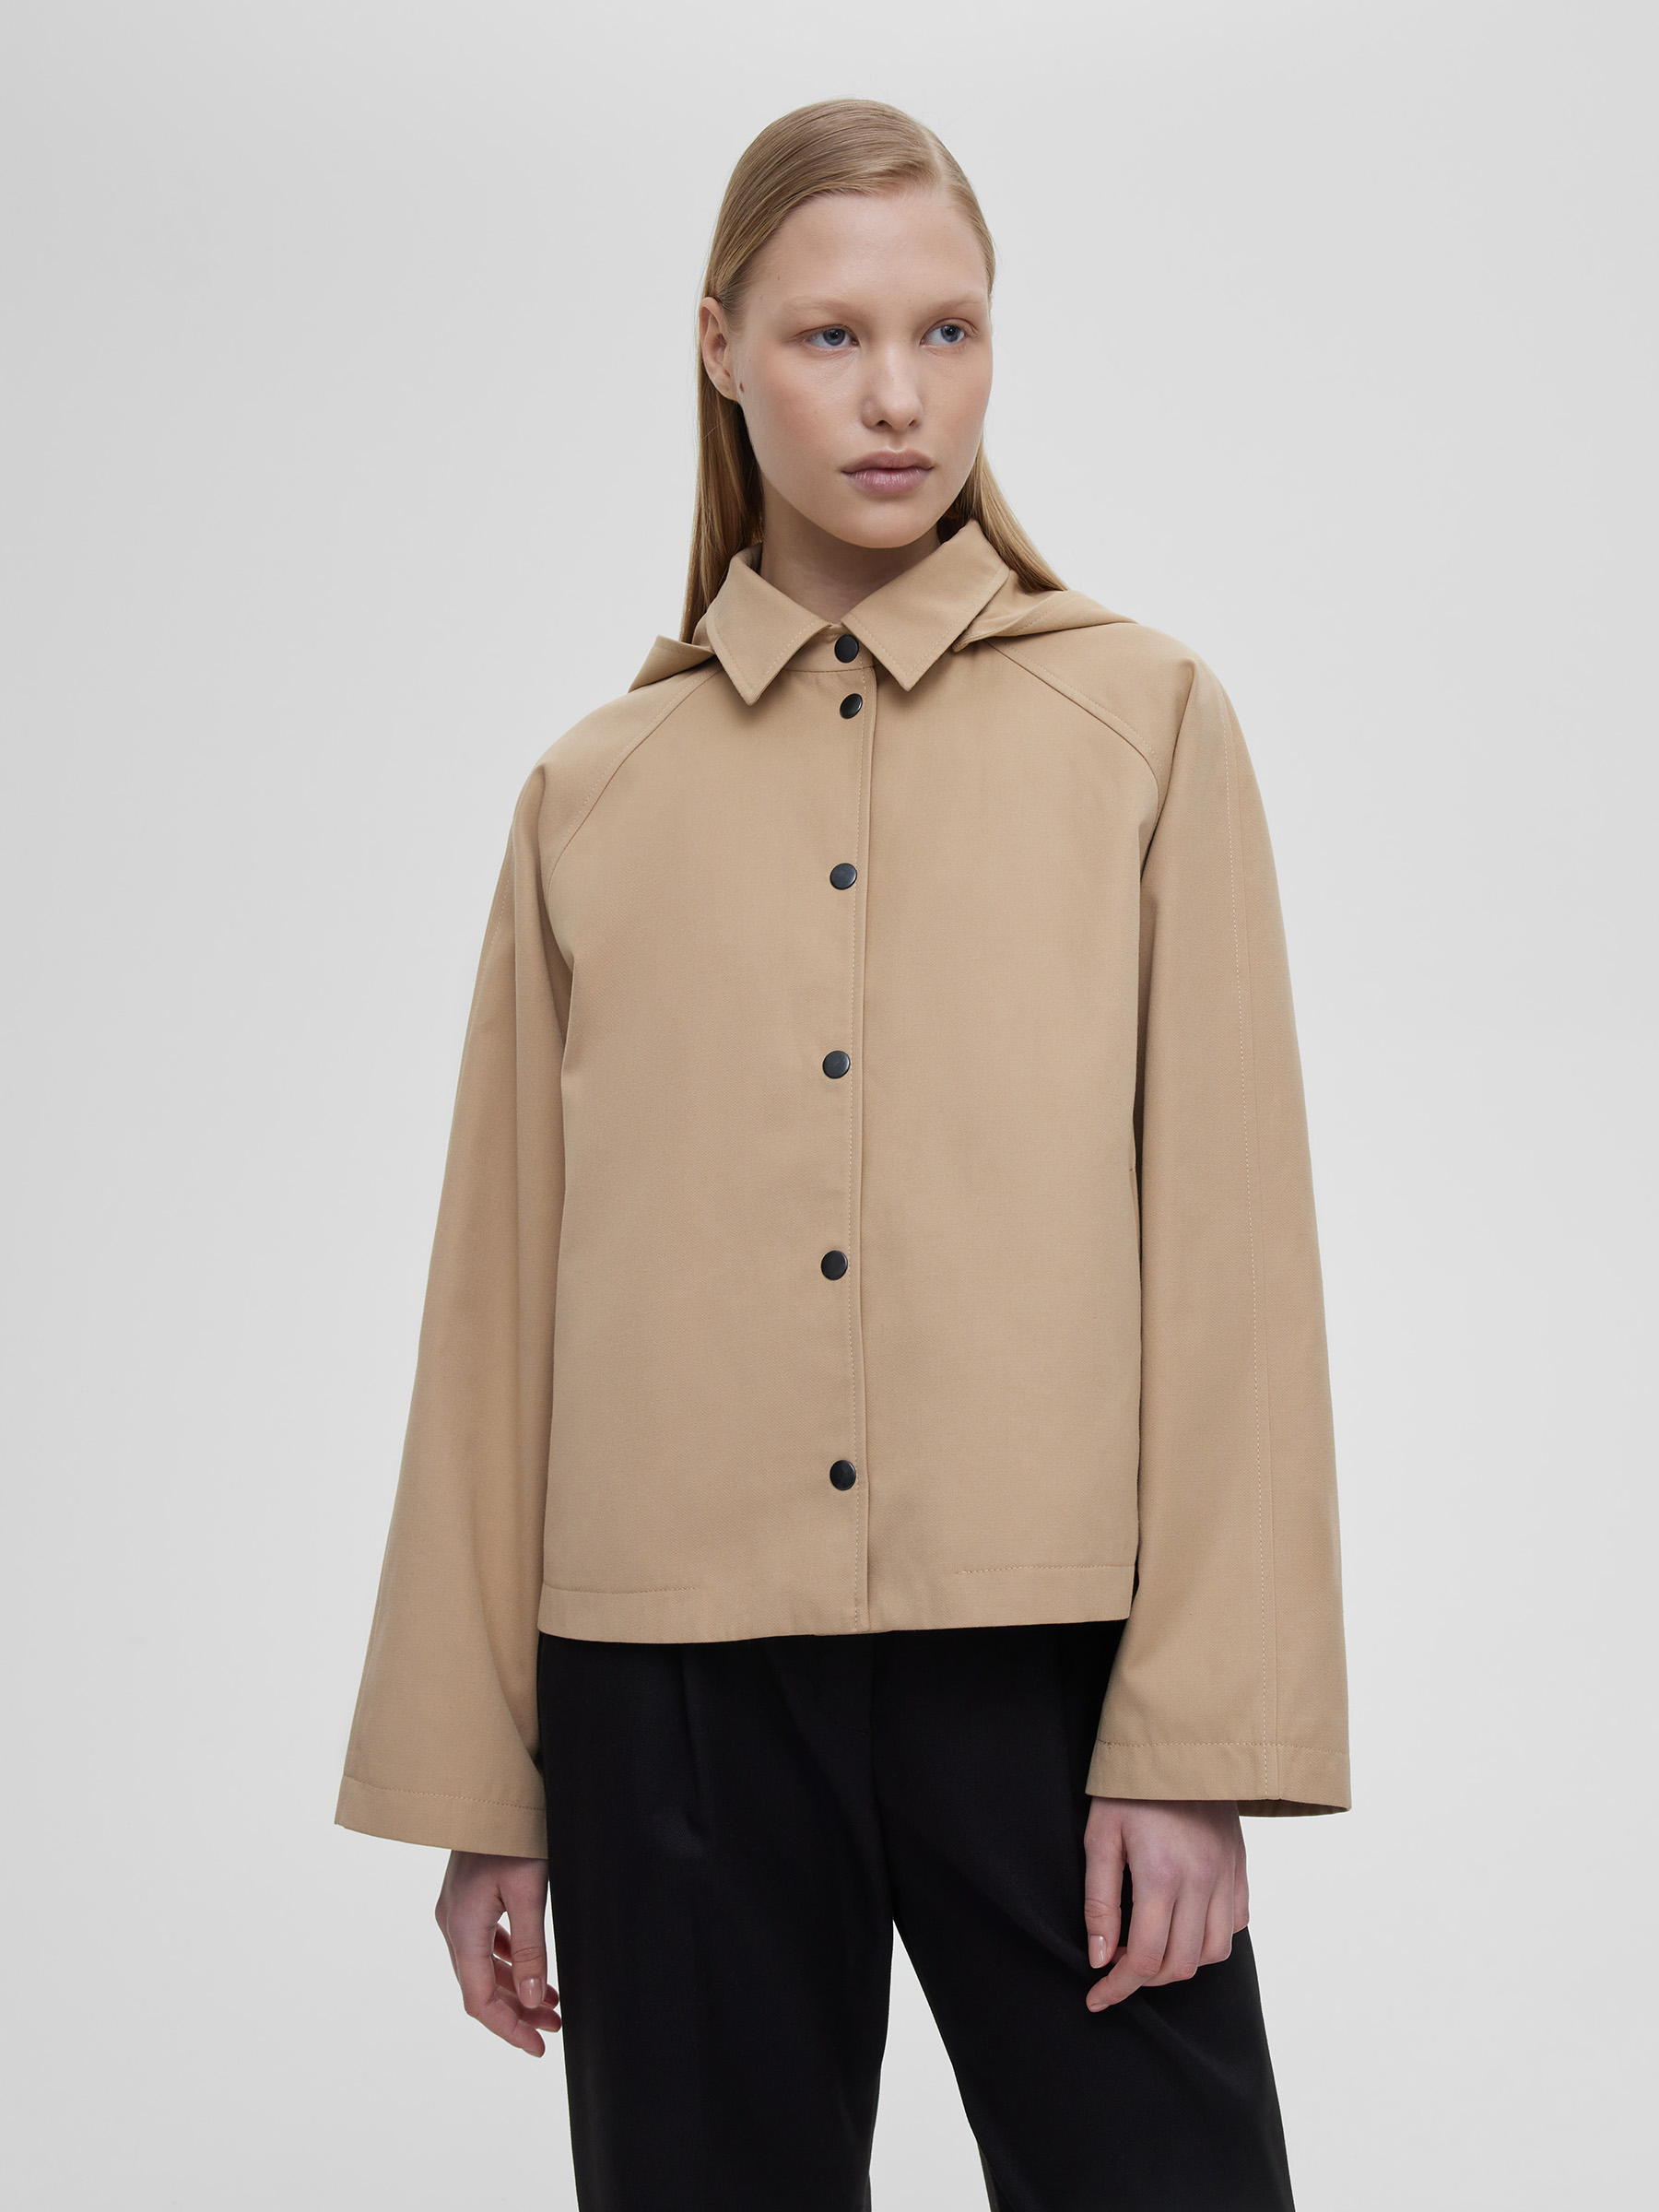 Куртка женская укороченная из хлопка с капюшоном, цвет – бежевый куртка женская размер 64 цвет бежевый